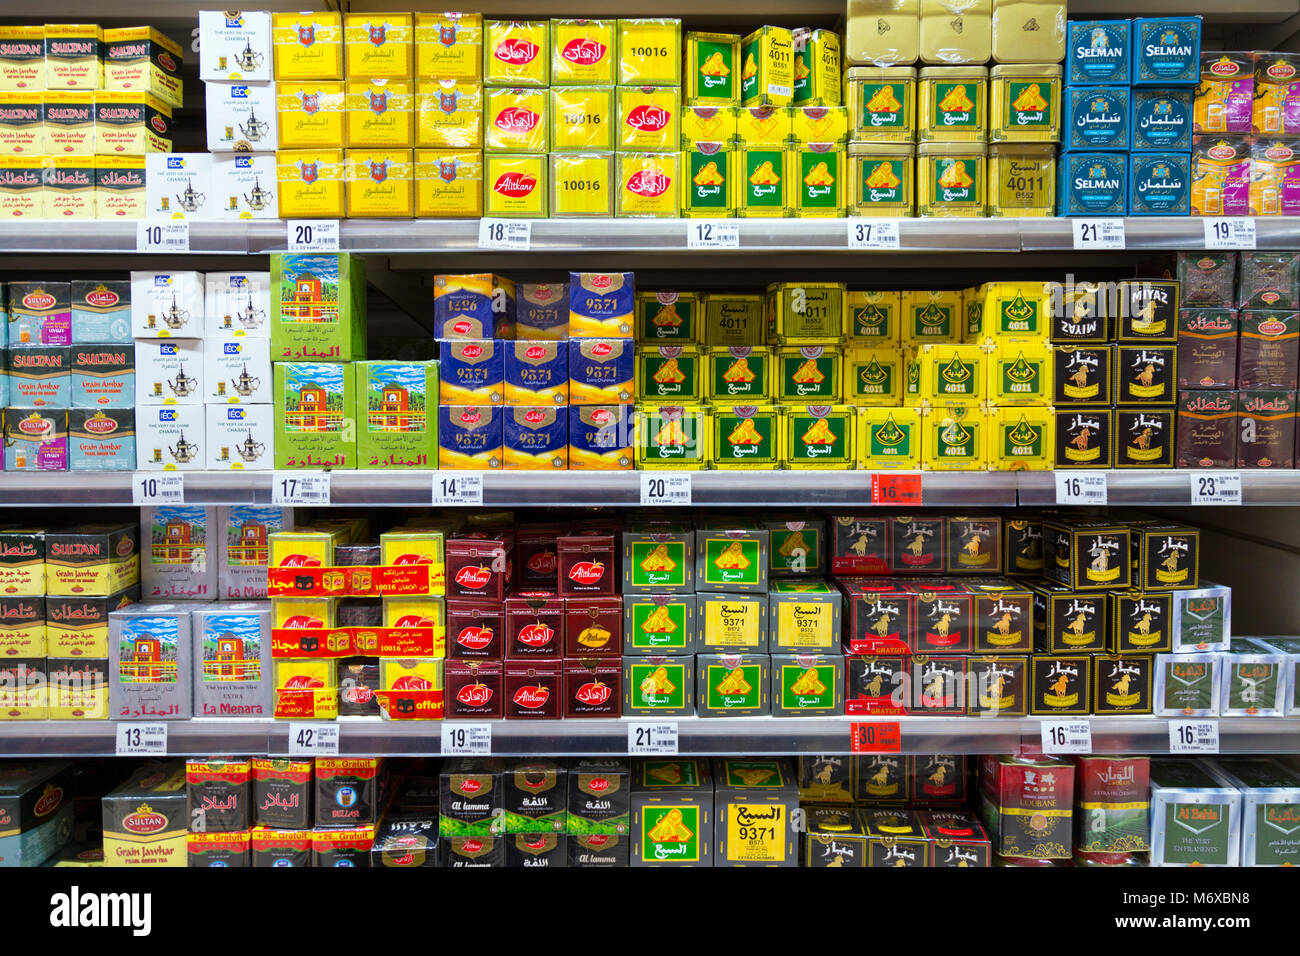 Sélection de thés verts gunpowder sur des étagères dans un supermarché, Fes, Maroc Banque D'Images